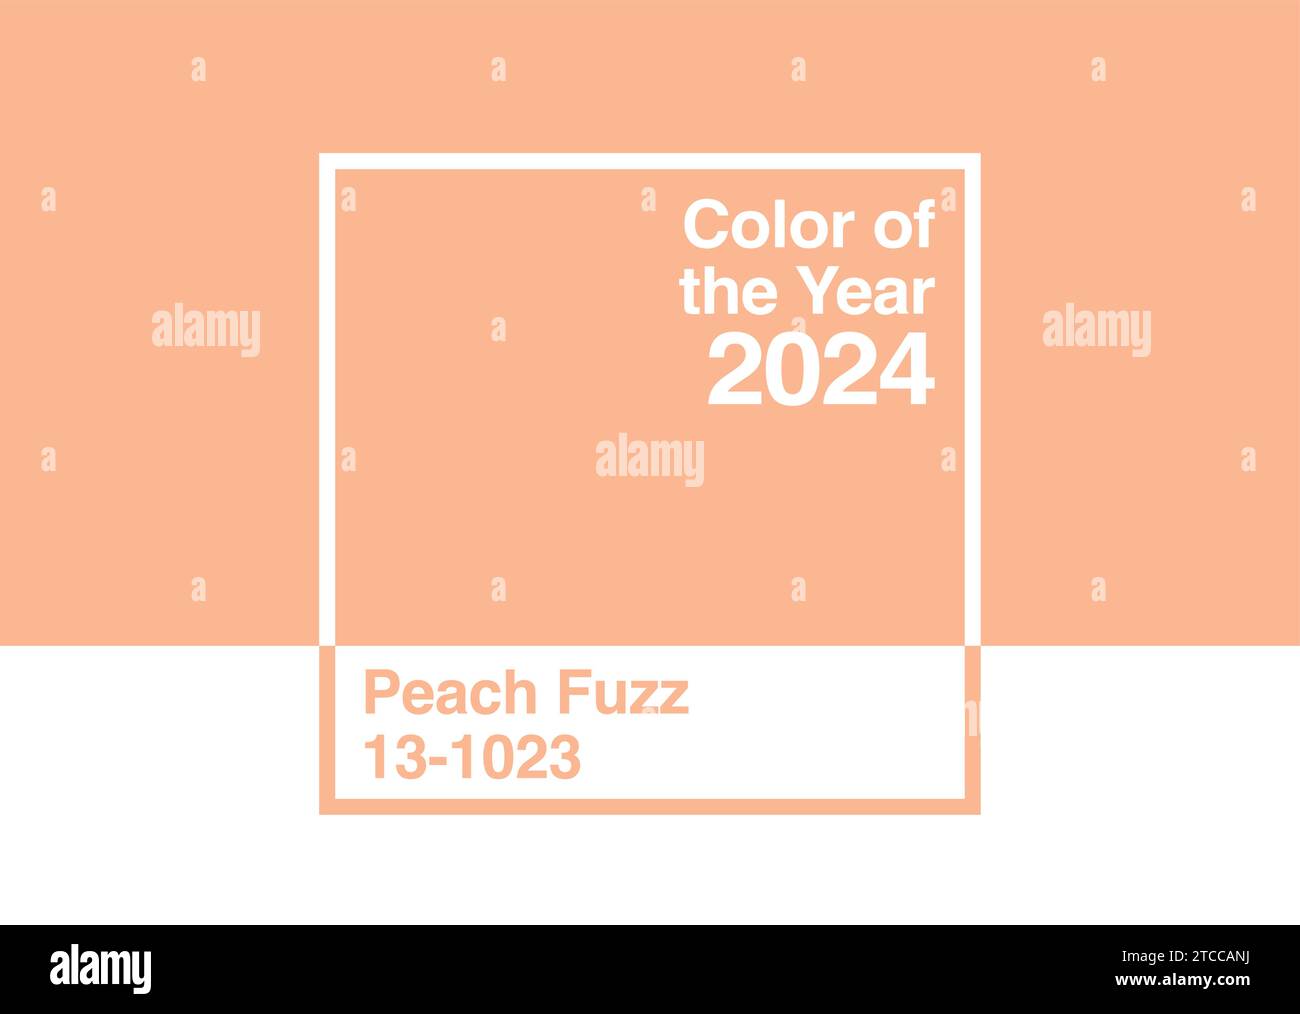 Antalya, Turchia - 11 dicembre 2023: 2024 Color of the Year, Pantone 13-1023 Peach Fuzz trend color palette sample Swatch book guide Illustrazione Vettoriale